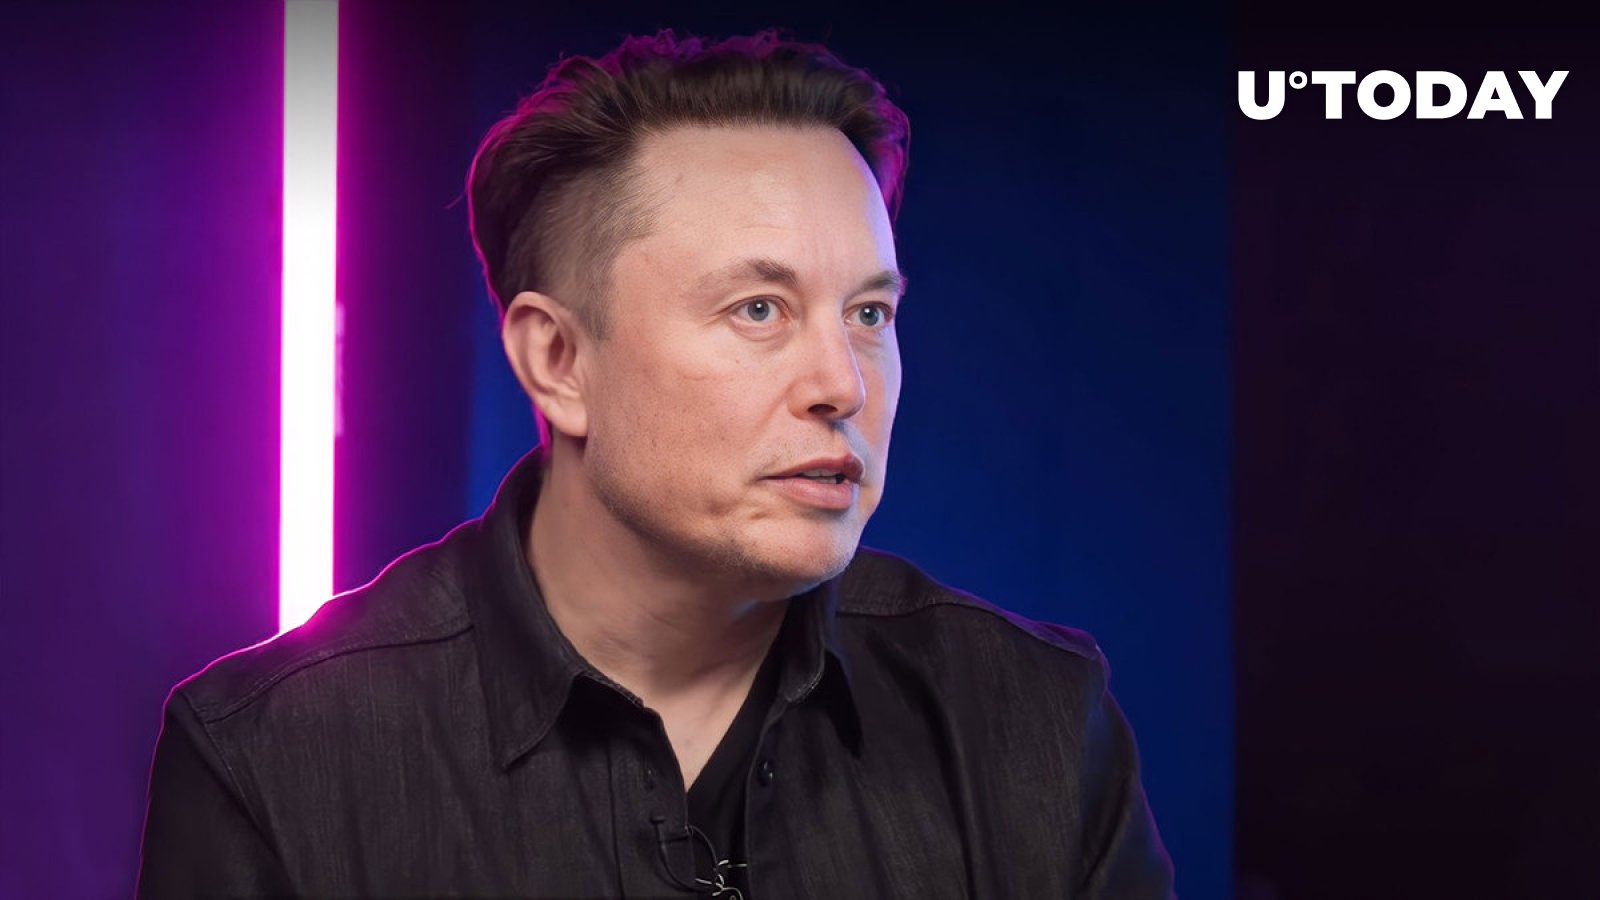 Elon Musk’s Cryptic Tweet Raises SHIB, XRP, DOGE Armies’ Enthusiasm